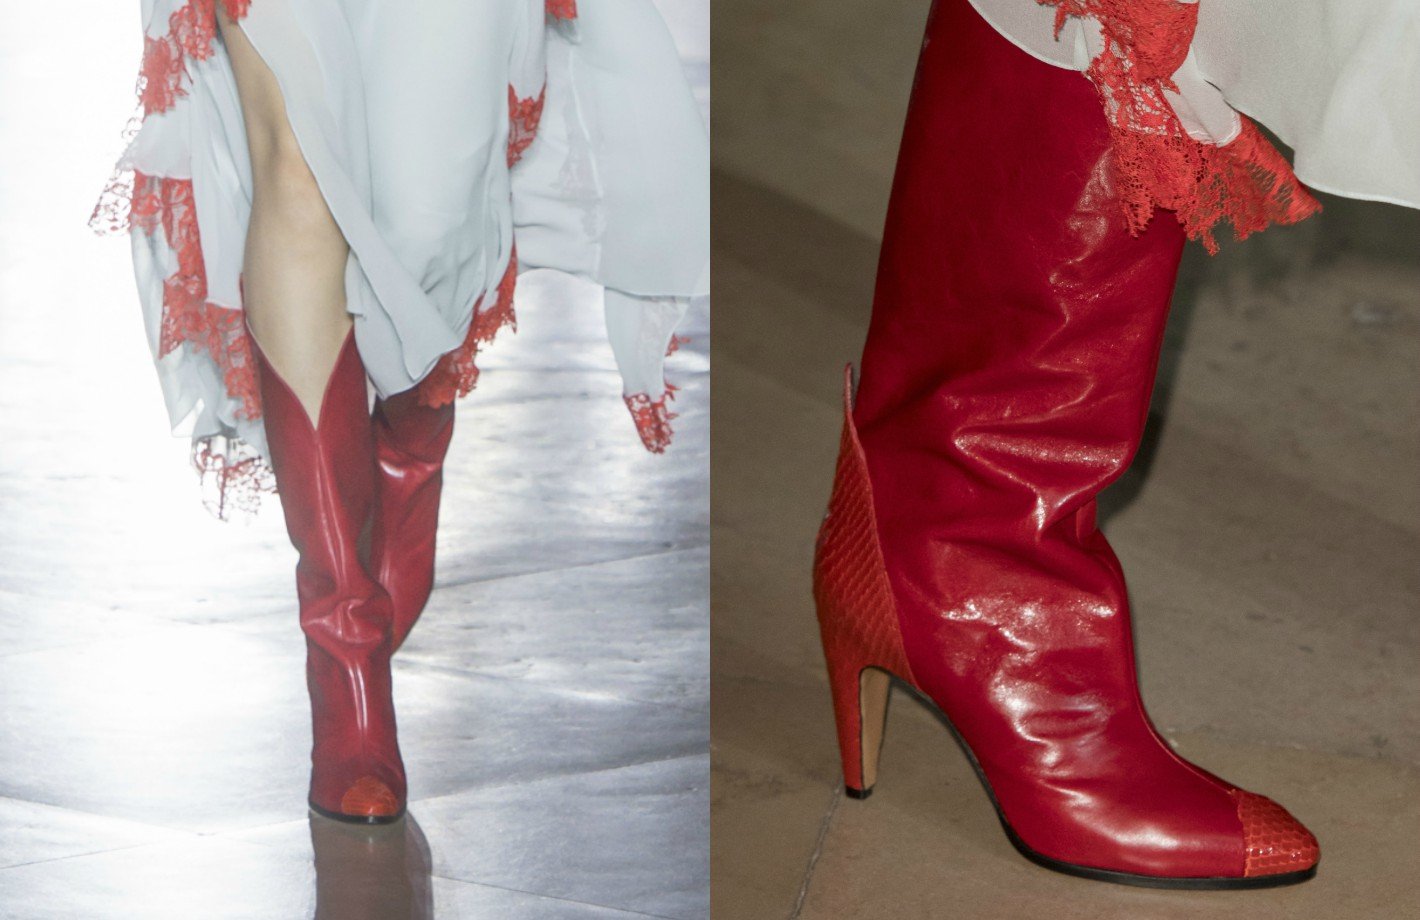 Kochamy to!: czerwone buty z debiutanckiej kolekcji Clare Waight Keller dla Givenchy